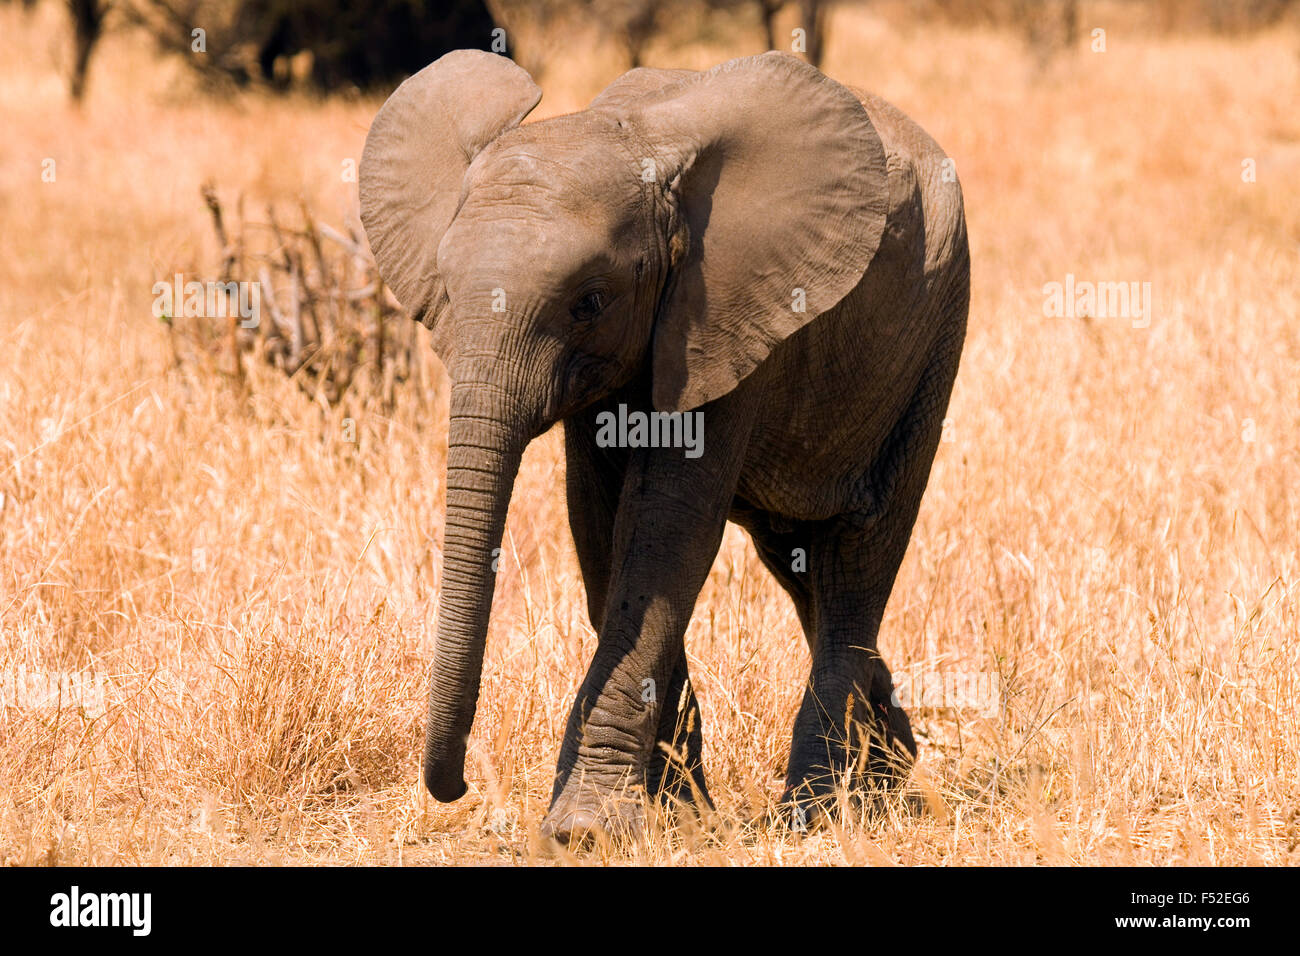 Baby elephant, Tarangire National Park, Tanzania Stock Photo